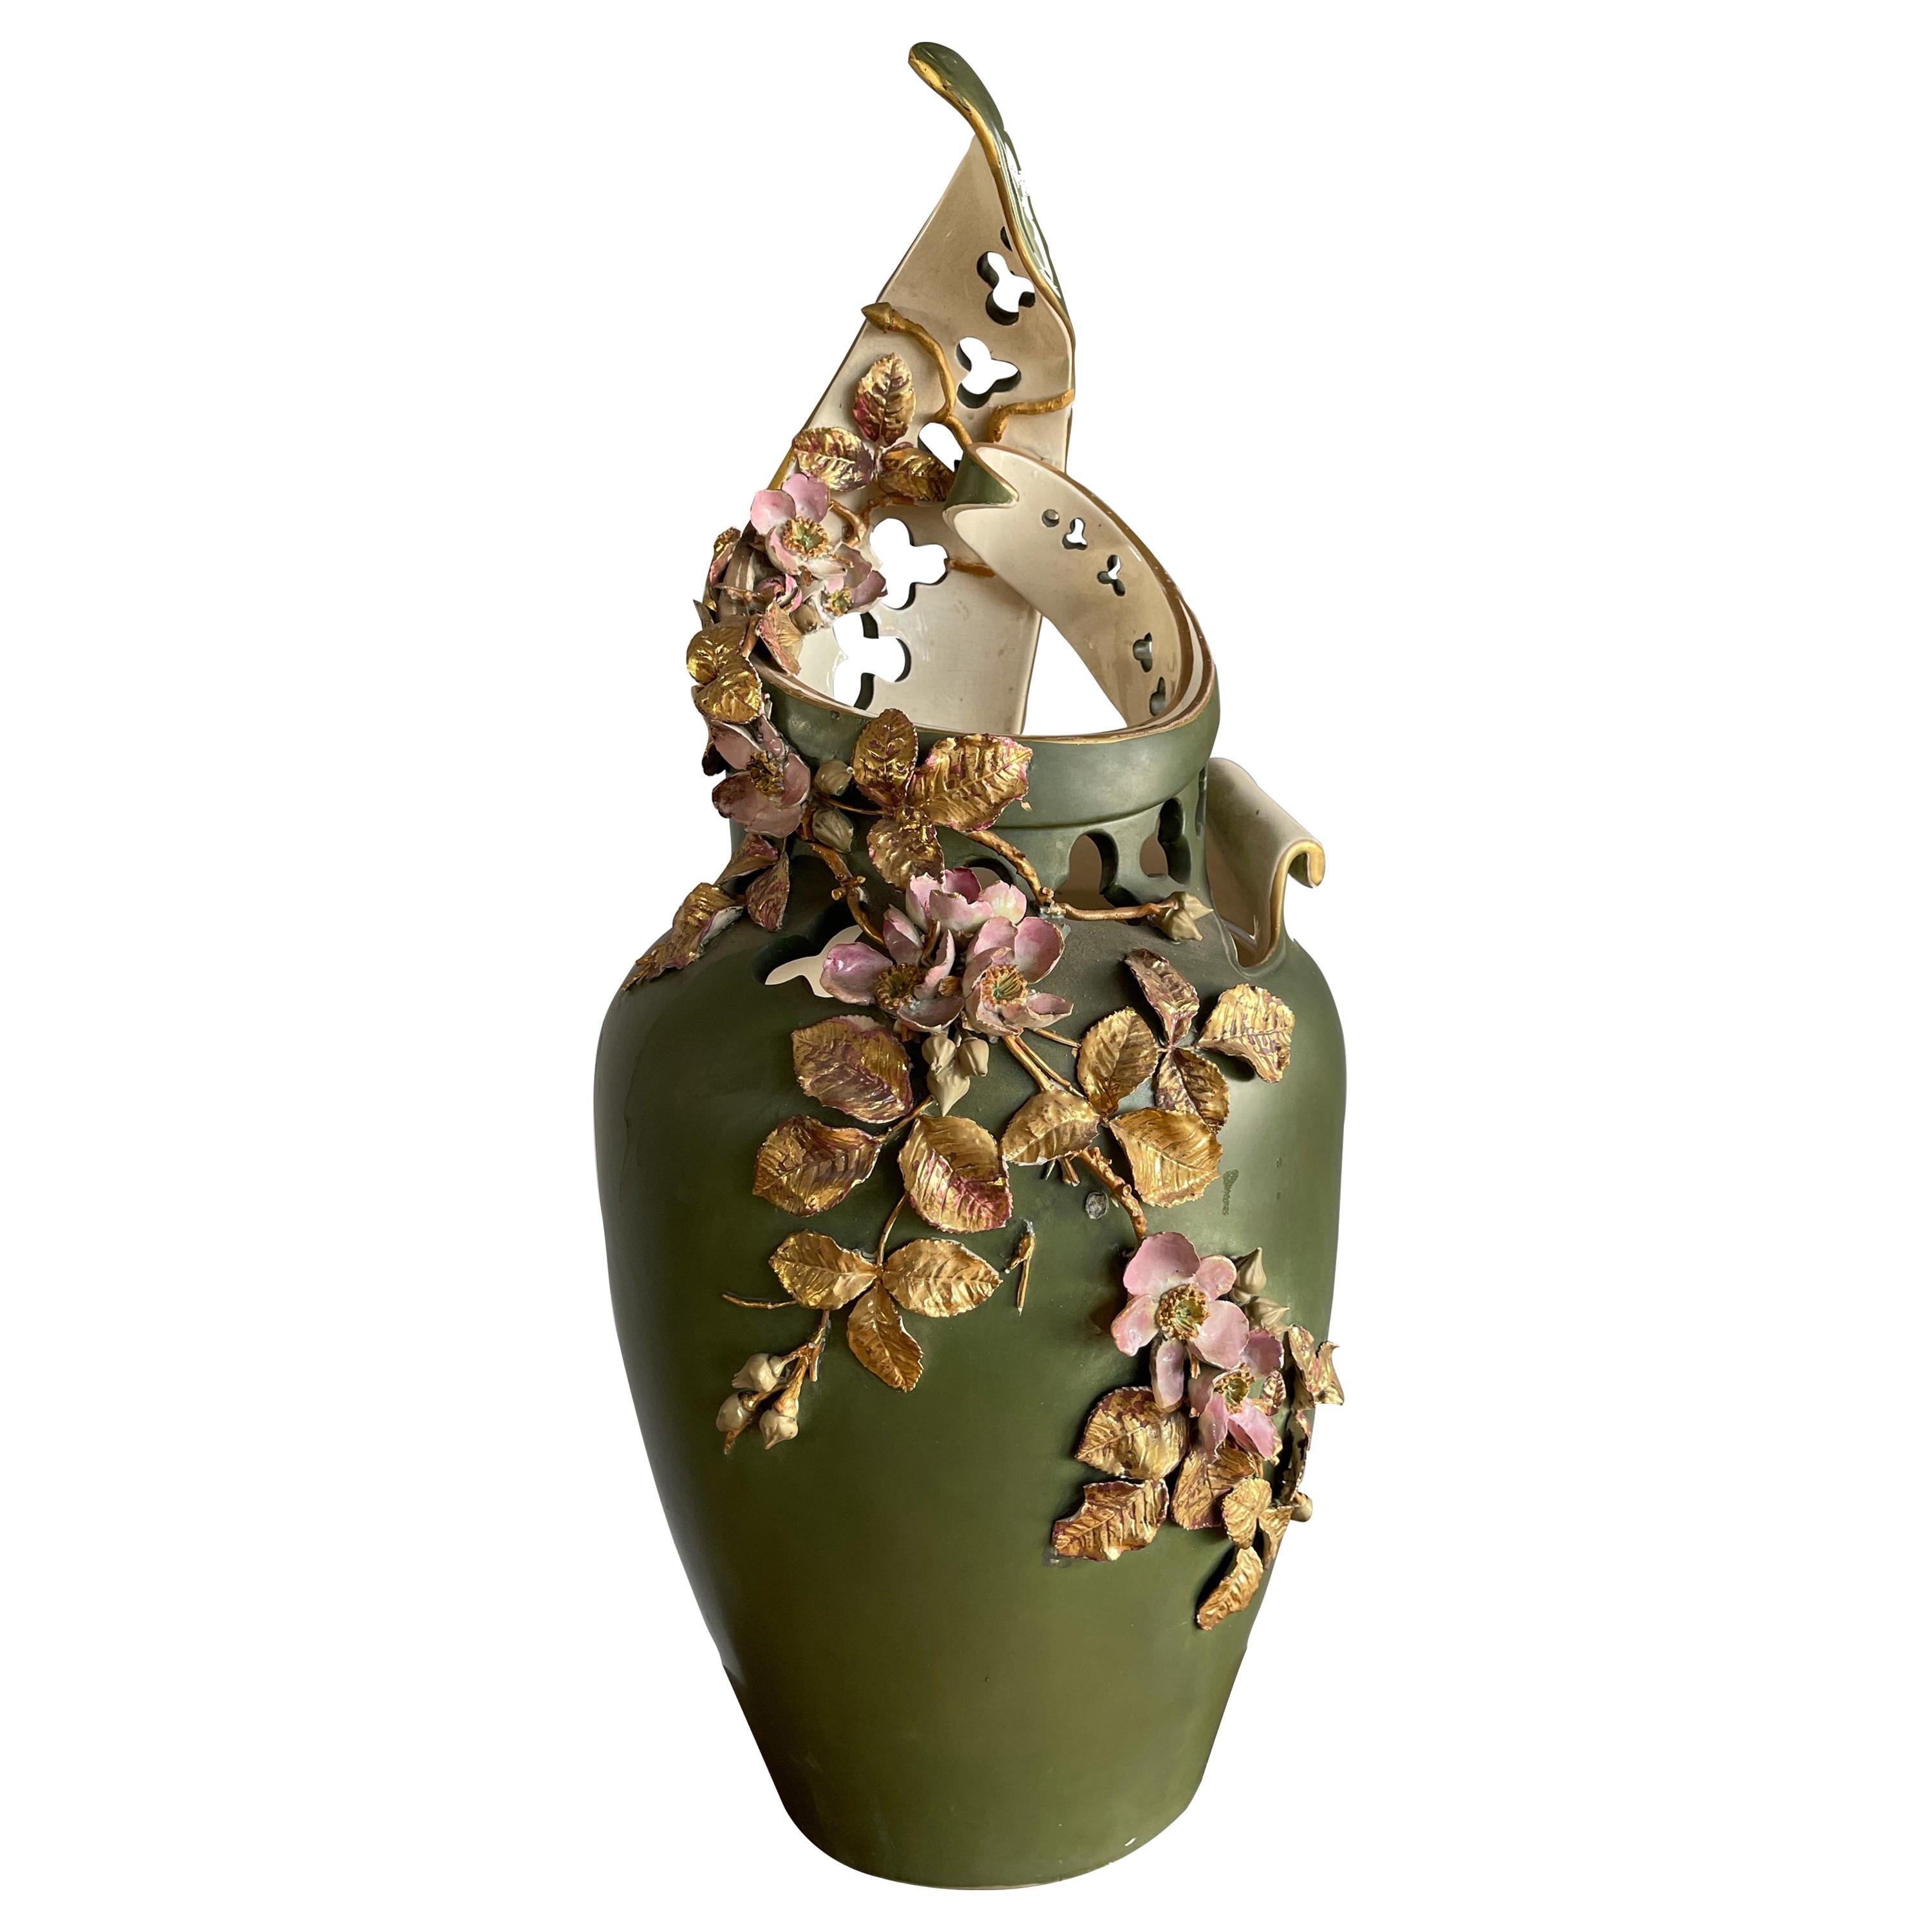 Impressionnant vase en porcelaine d'art gothique ancien du début des années 1900, finement fabriqué à la main